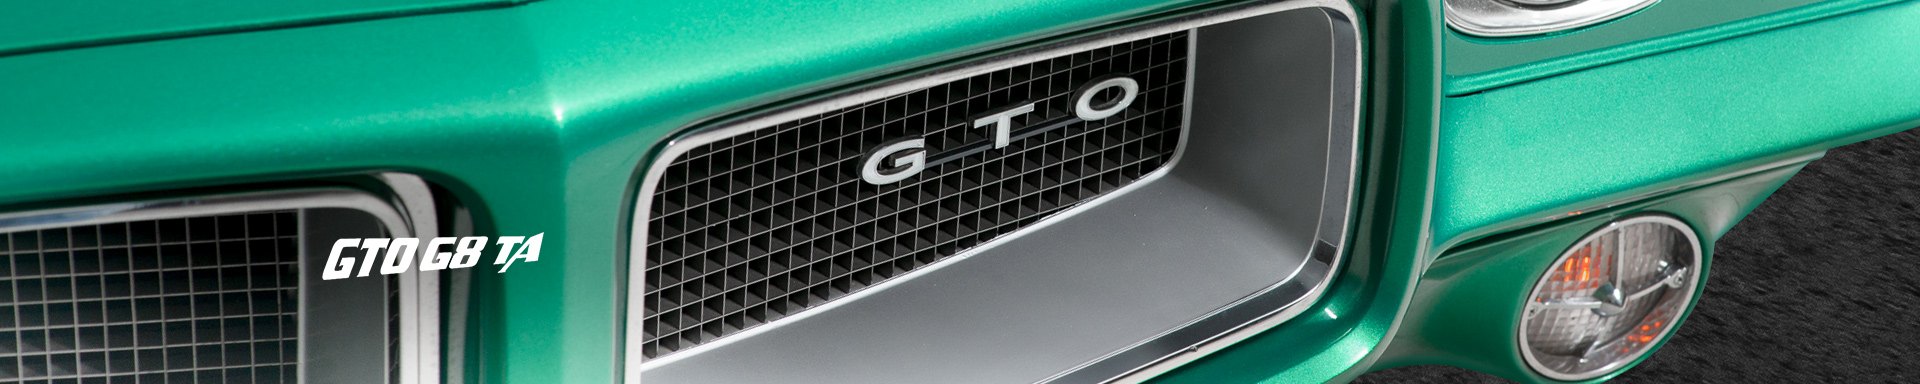 GTOG8TA Steering Wheels